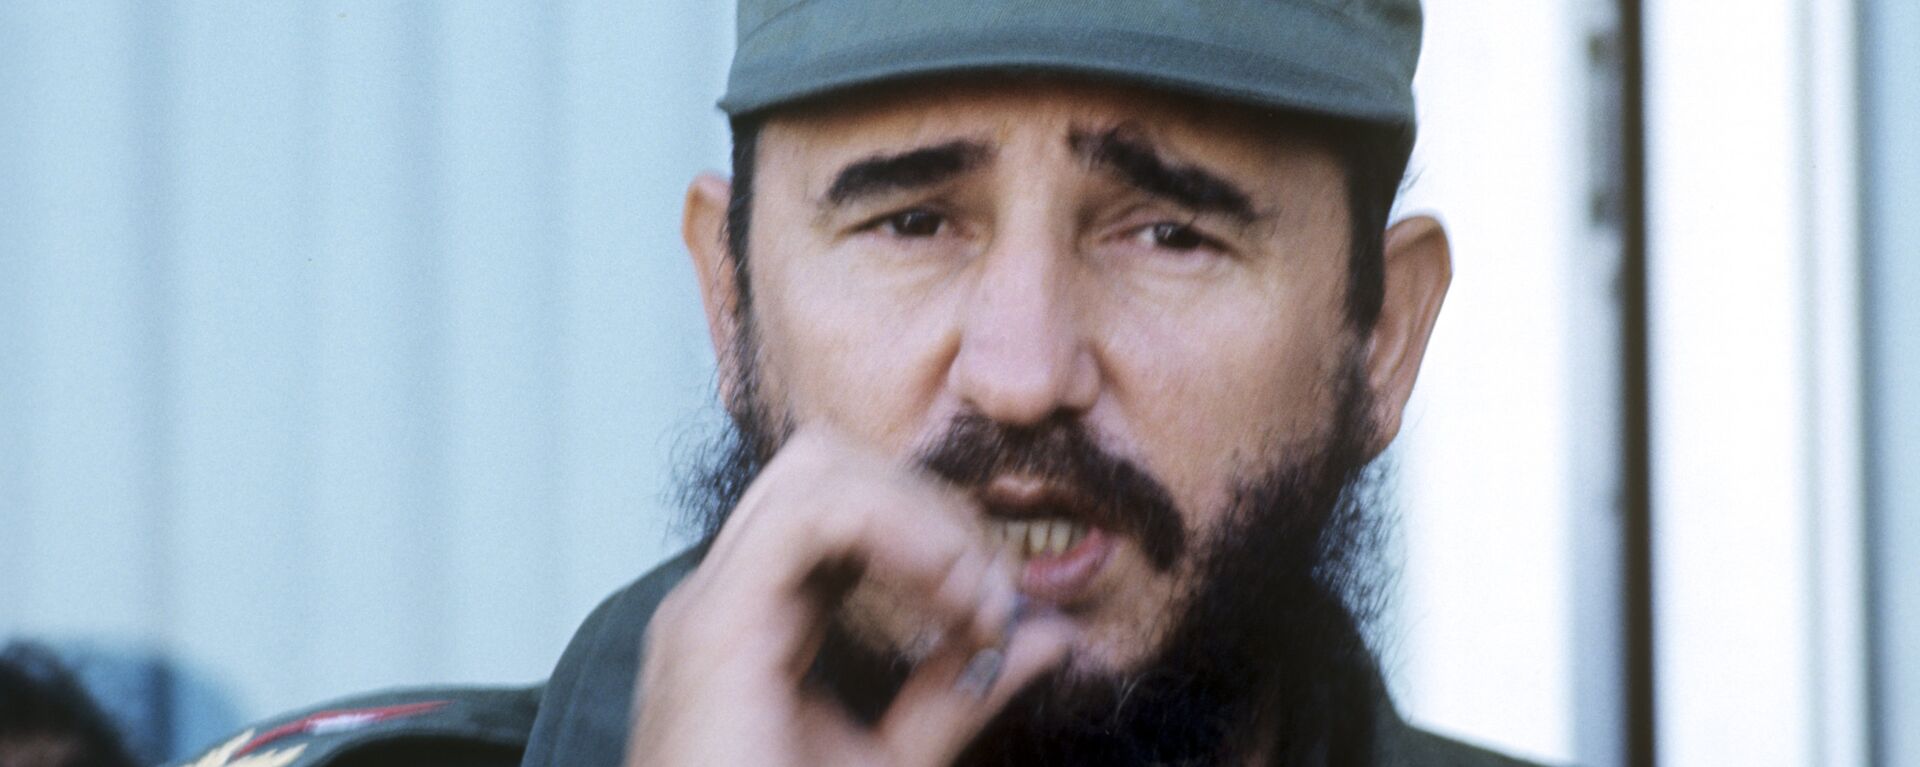 Fidel Castro, el líder de la Revolución cubana - Sputnik Mundo, 1920, 25.11.2021